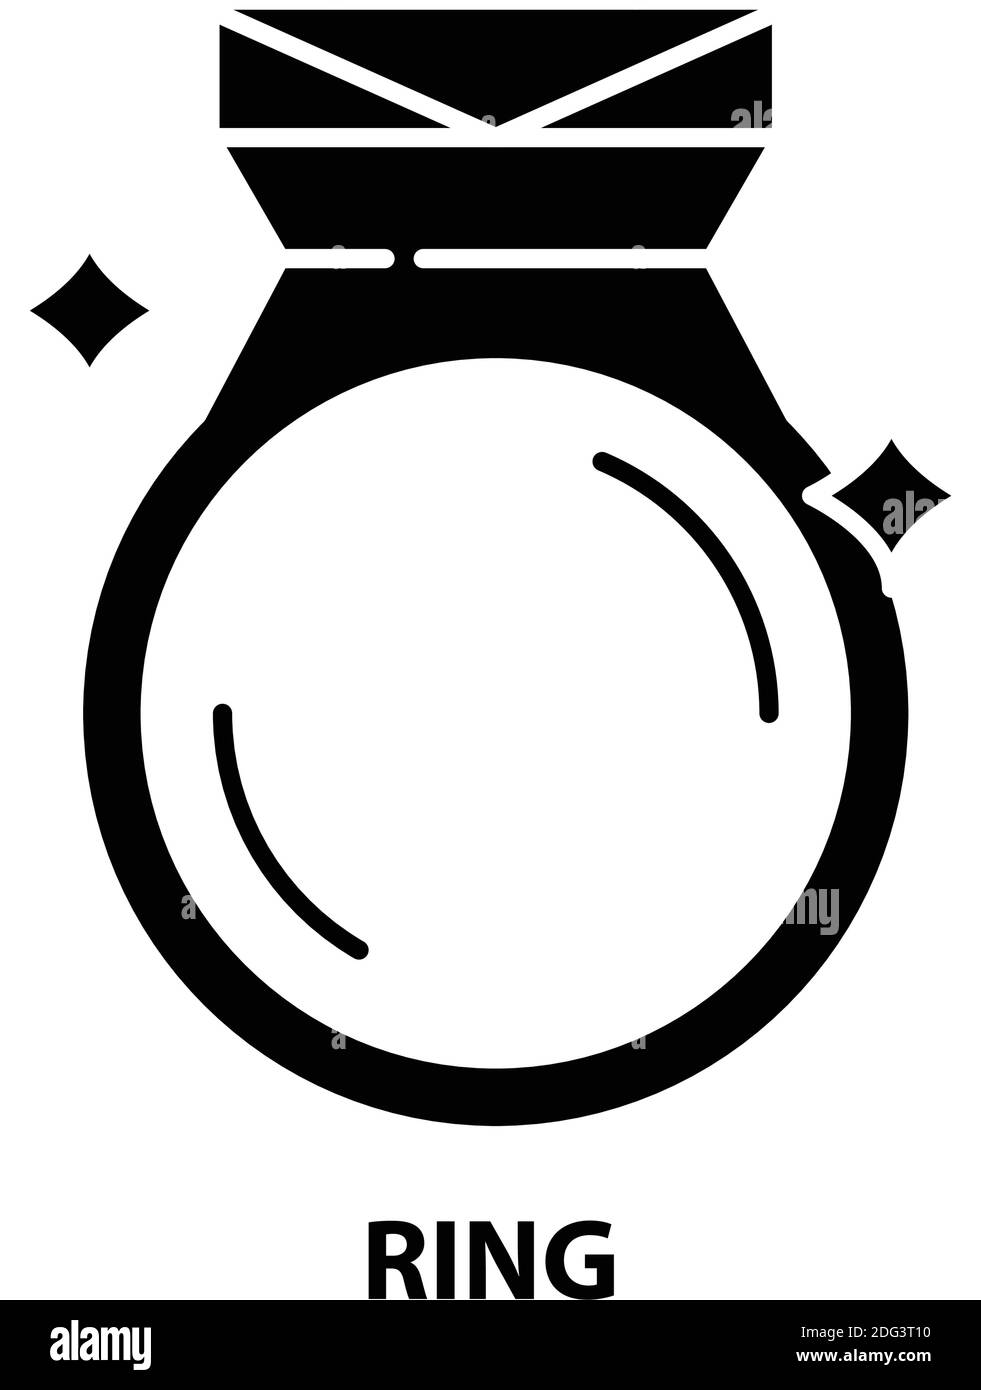 Ringsymbol, schwarzes Vektorzeichen mit editierbaren Konturen, Konzeptdarstellung Stock Vektor